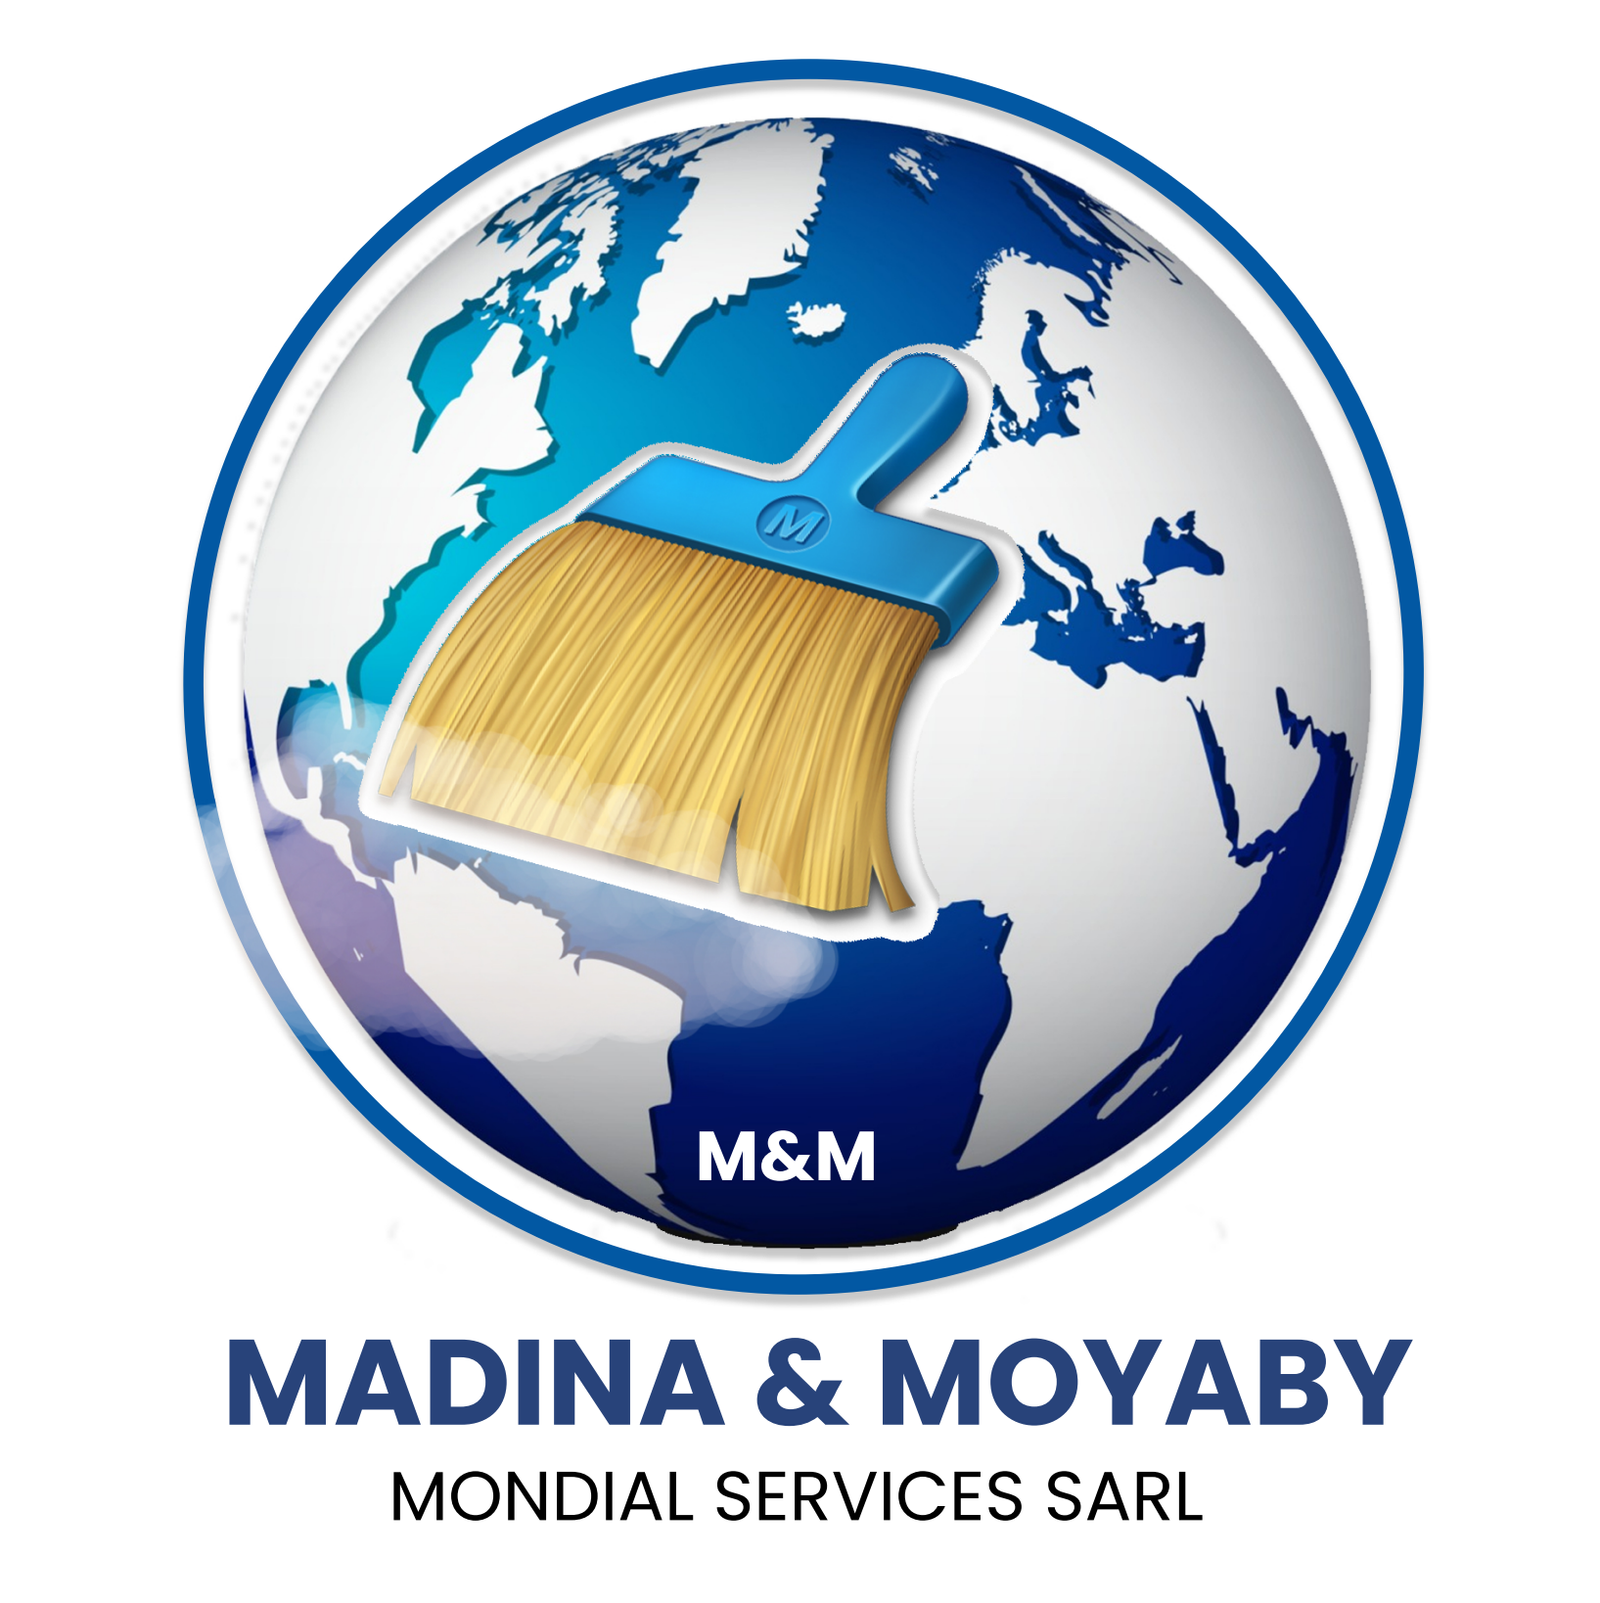 M&M MONDIAL SERVICE